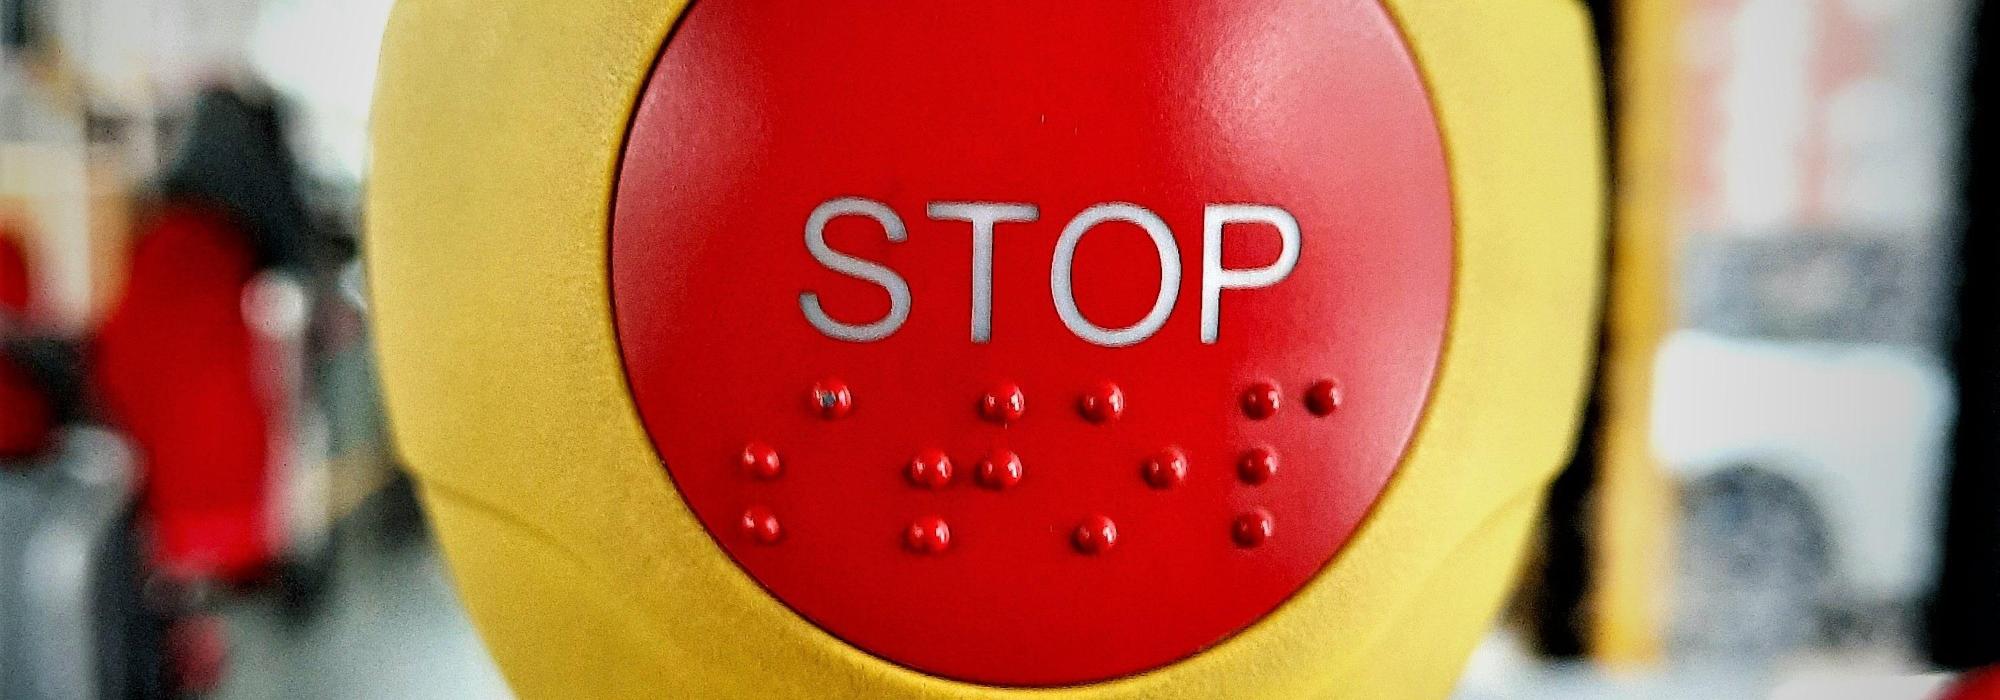 Symbolbild Stop/Halt: Roter Knopf im Bus Hochformat